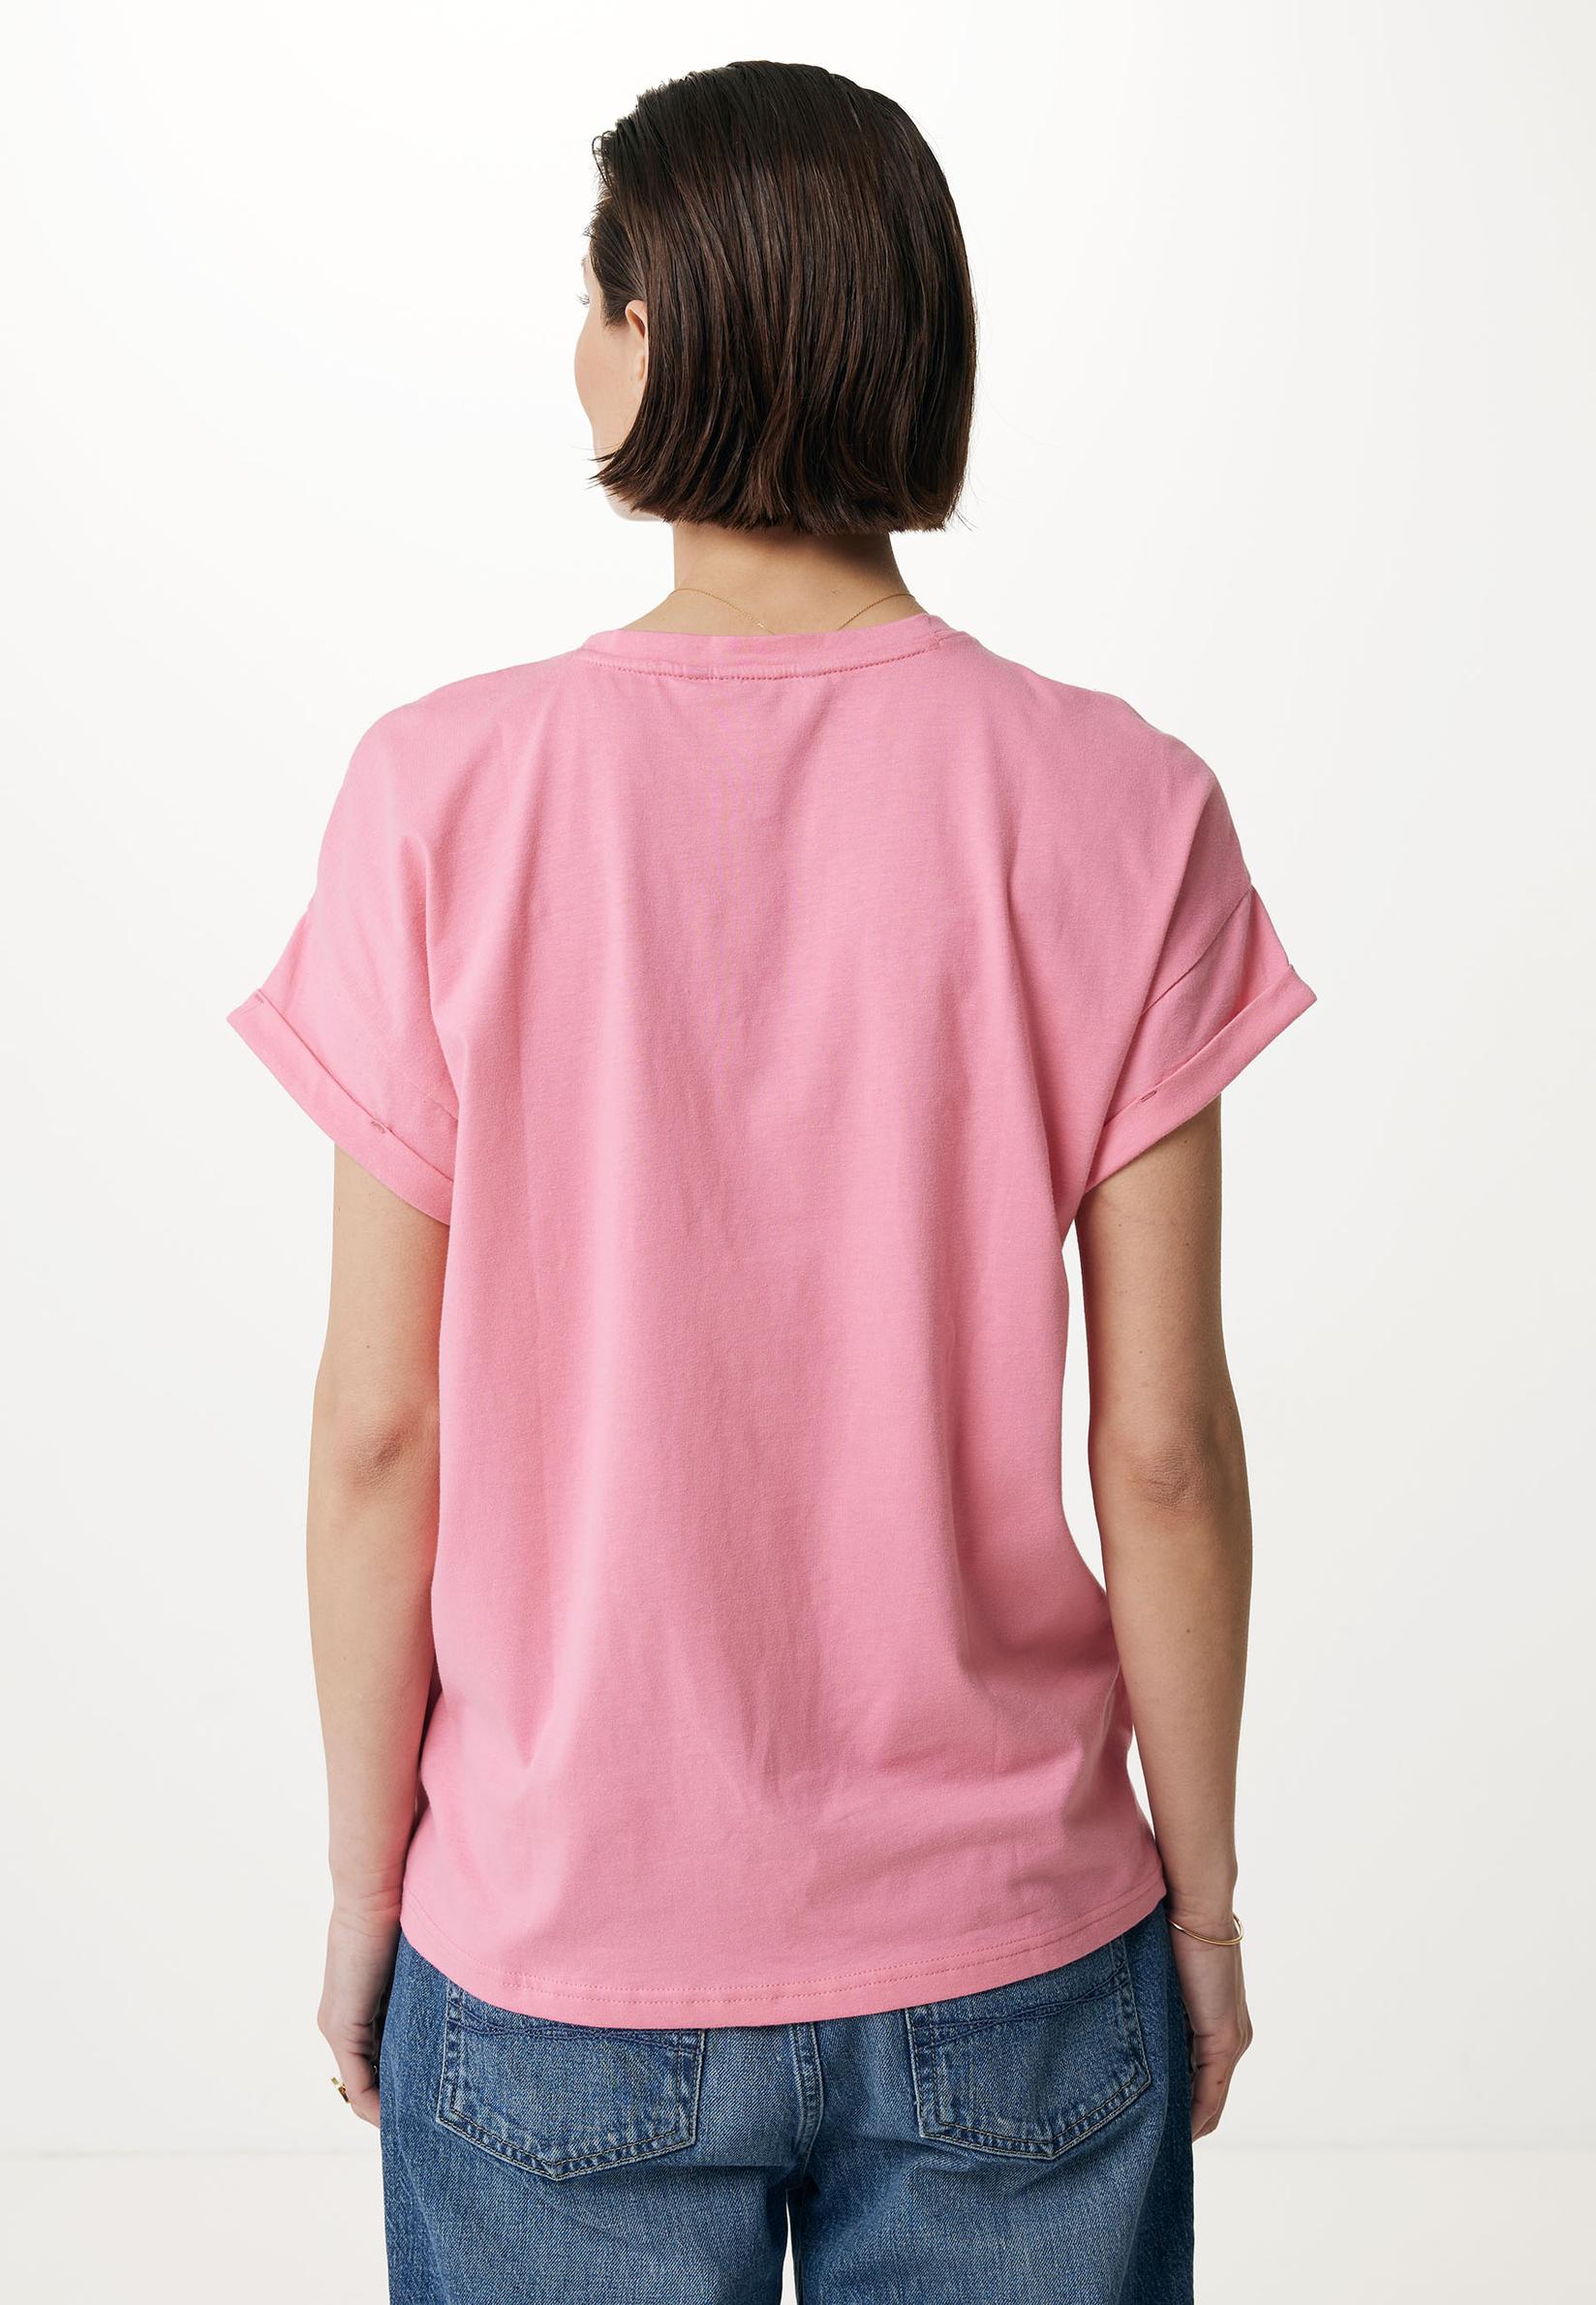 Selected image for MEXX Ženska majica sa kratkim rukavima i logom svetloroze